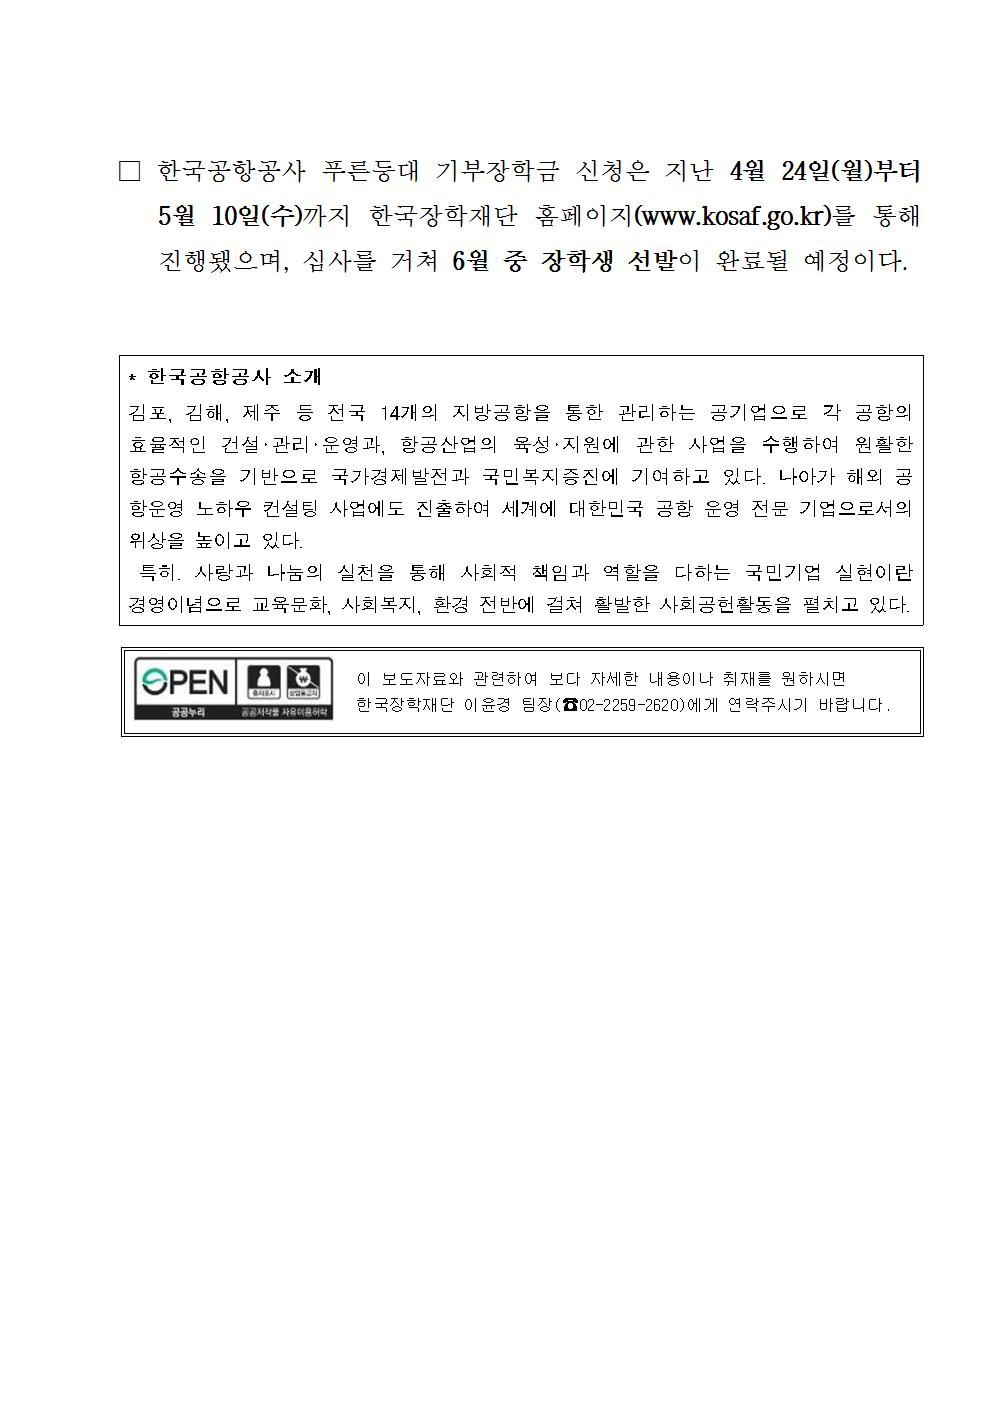 05-15(월)[보도자료] 한국장학재단-한국공항공사, 푸른등대 기부장학금 기탁식 개최003.jpg